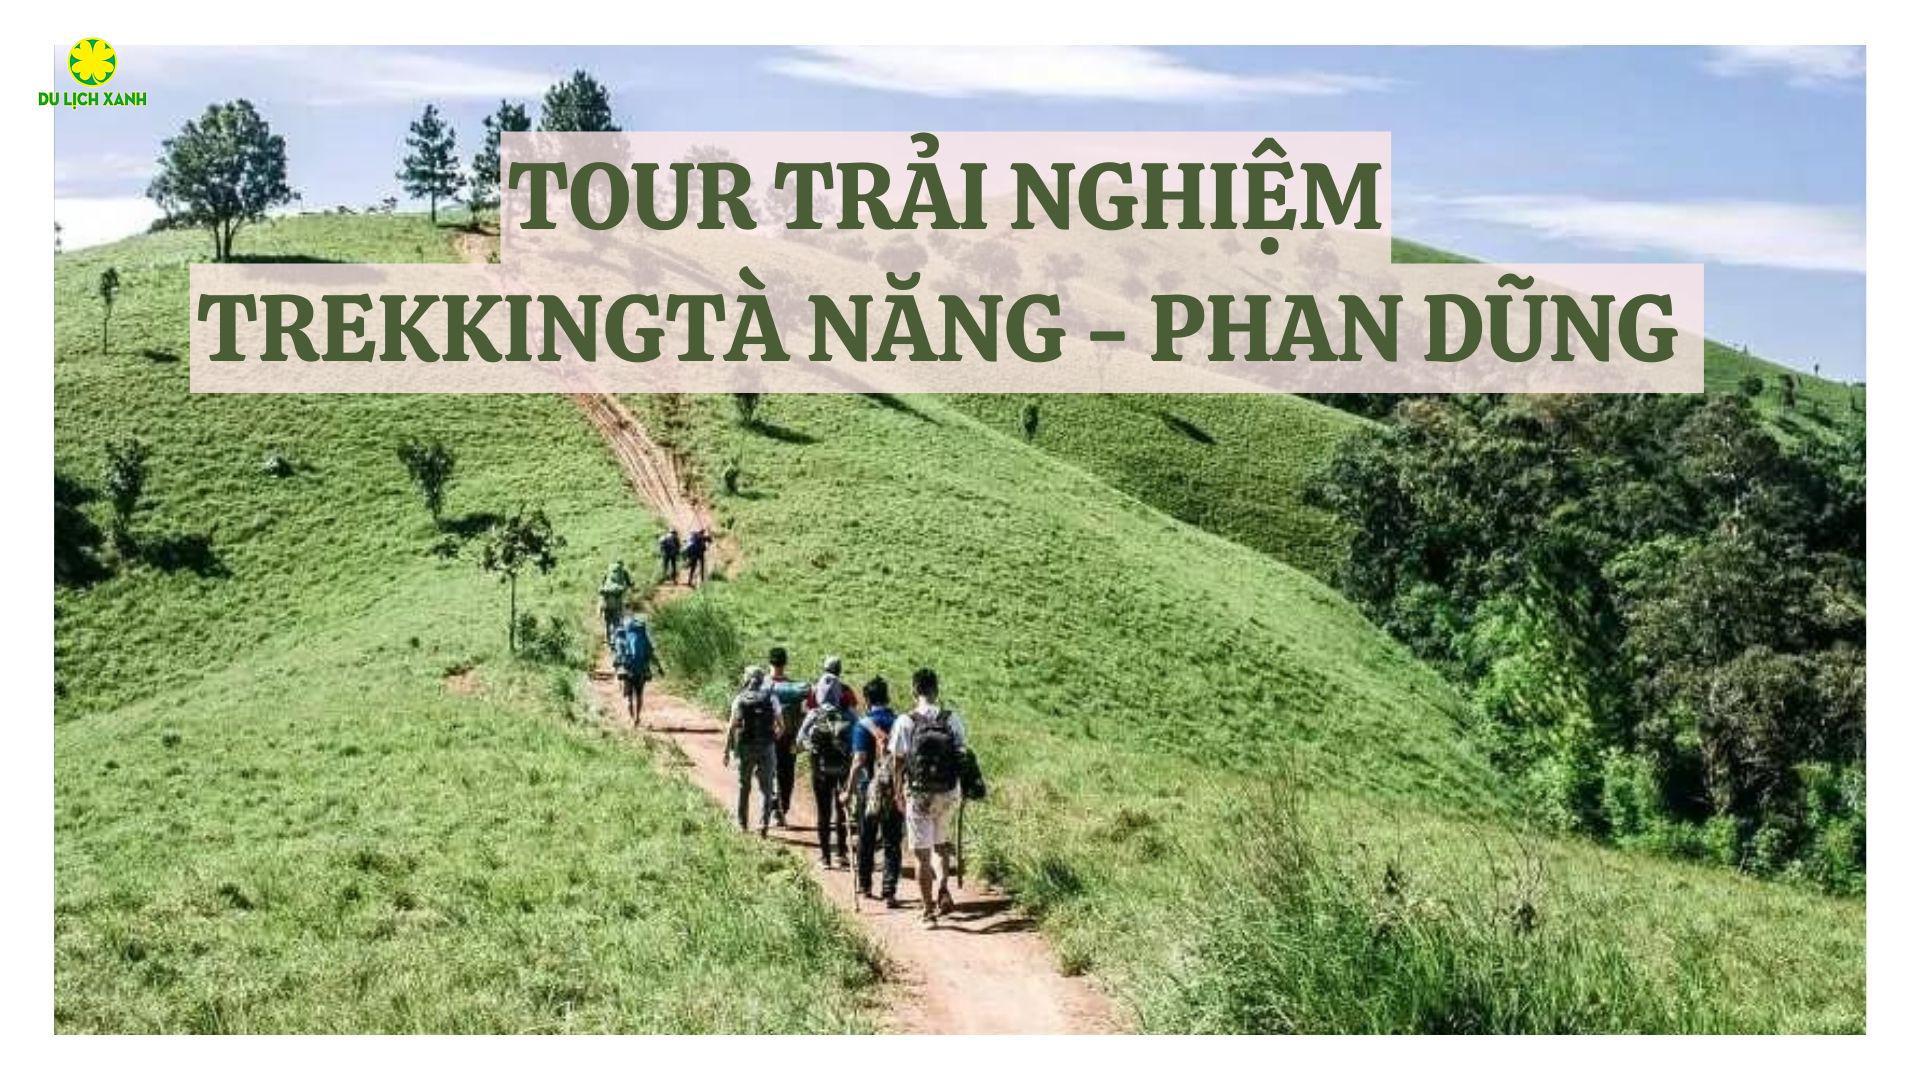 Du lịch mạo hiểm: Trekking Tà Năng - Phan Dũng 3N2Đ